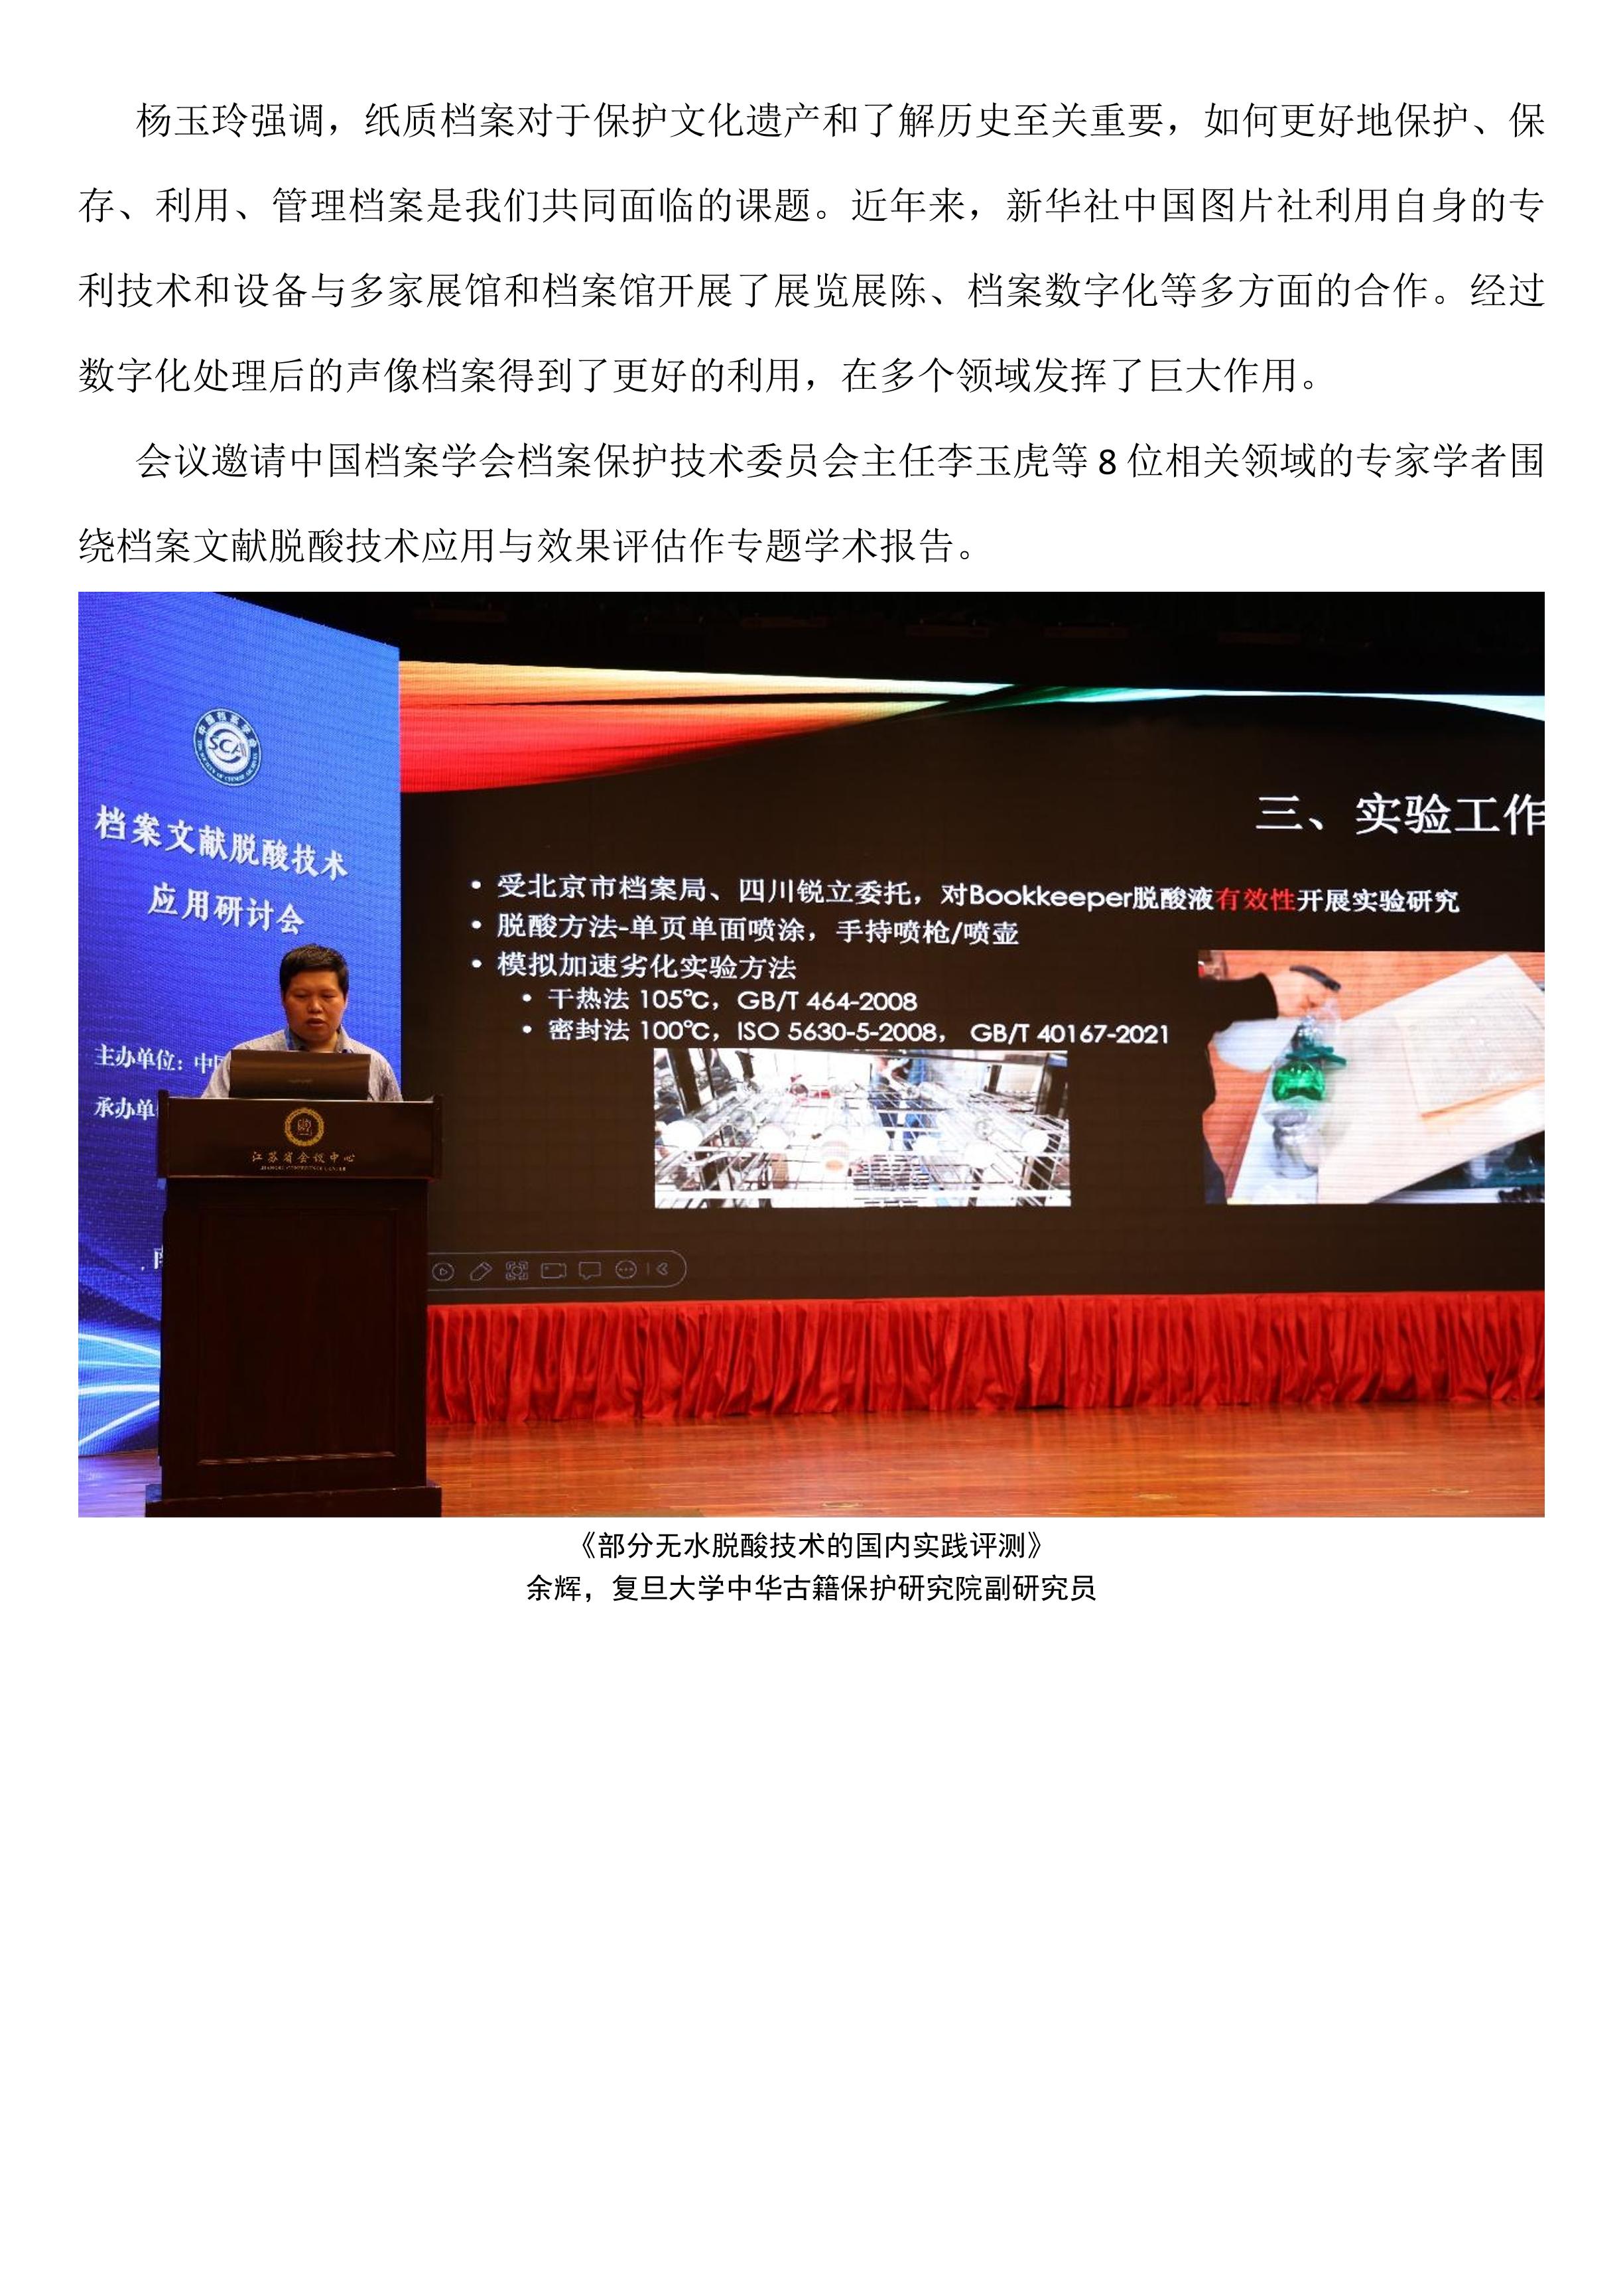 档案文献脱酸技术应用研讨会在南京召开-2